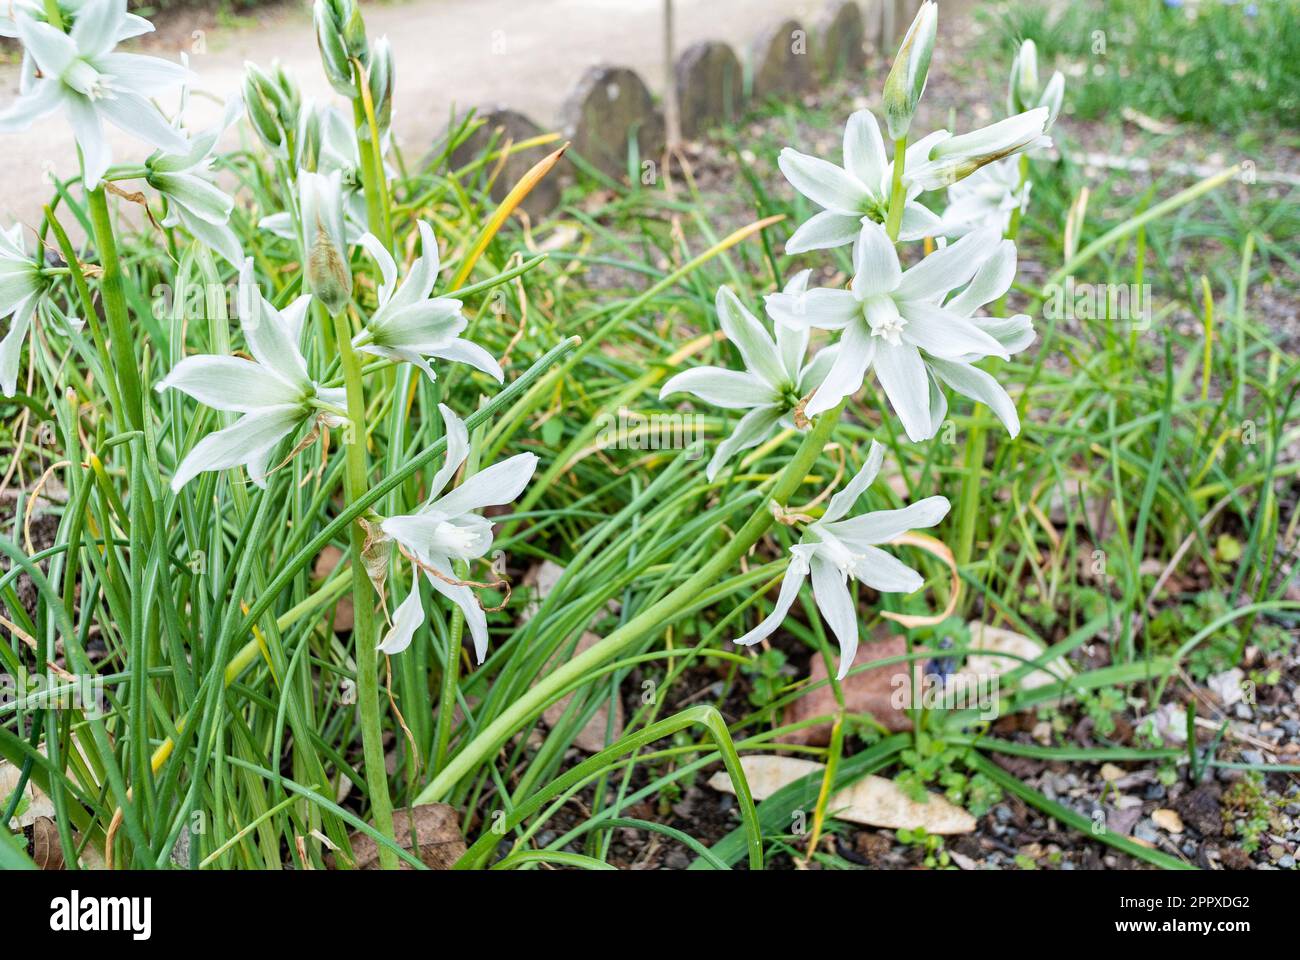 Ornithogalum nutans, noto come stellare di Betlemme,[2] è una specie di pianta fiorita della famiglia delle Asparagacee, originaria dell'Europa e del Sud Foto Stock